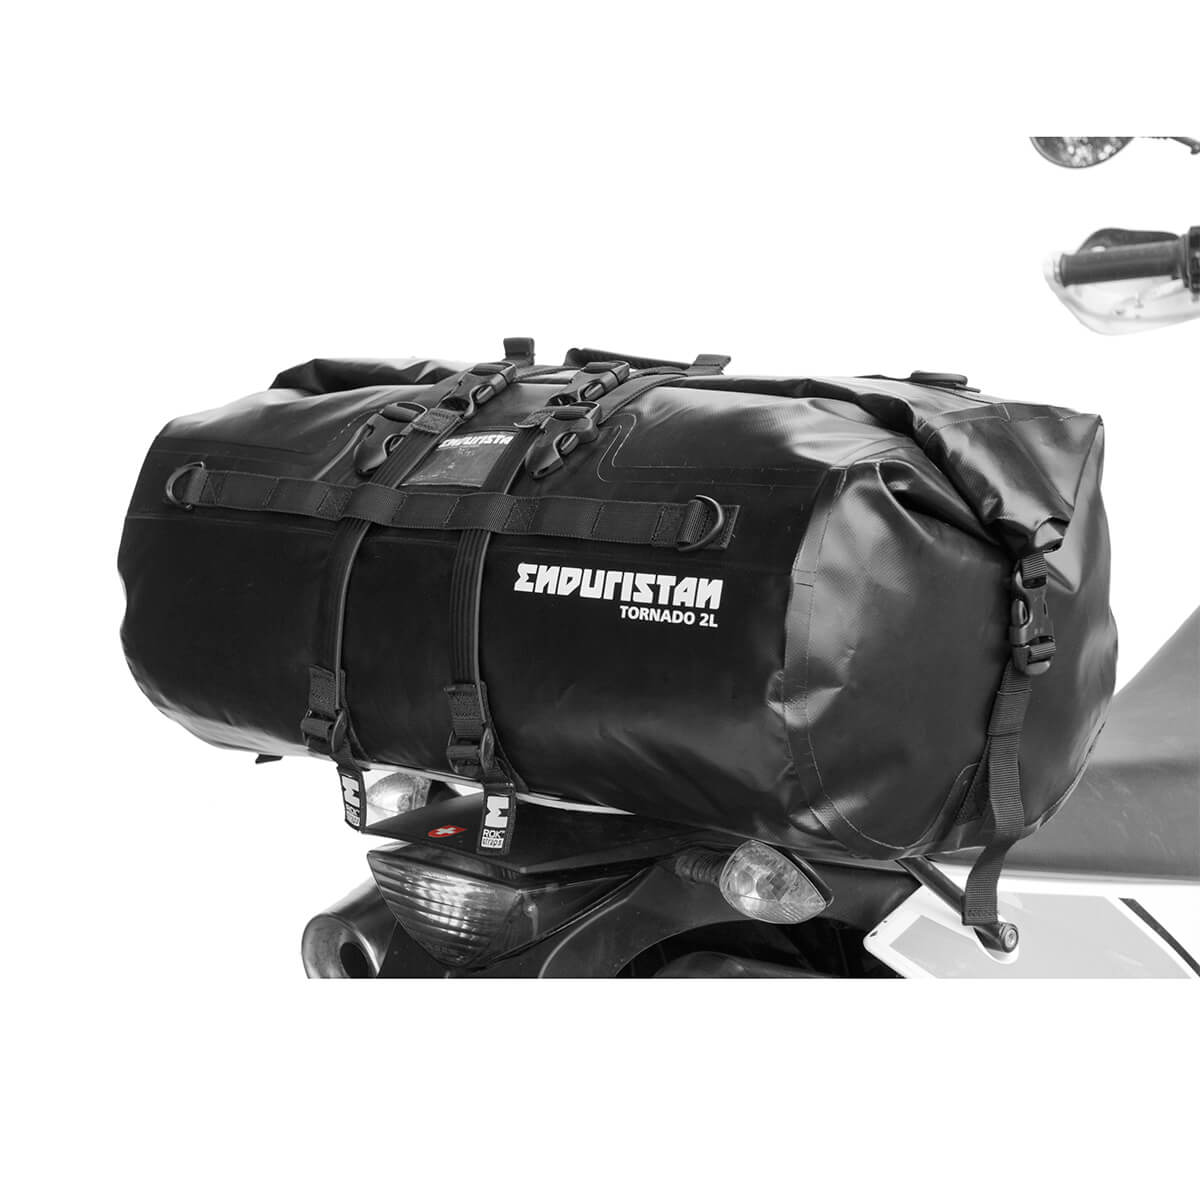 クラシック エンデュリスタン ENDURISTAN 防水 バイク用 リアバッグ シートバッグ 大容量 オフロード キャンプ ツーリング トルネード2  ドラムバッグ TORNADO2 PACK SACK Mサイズ